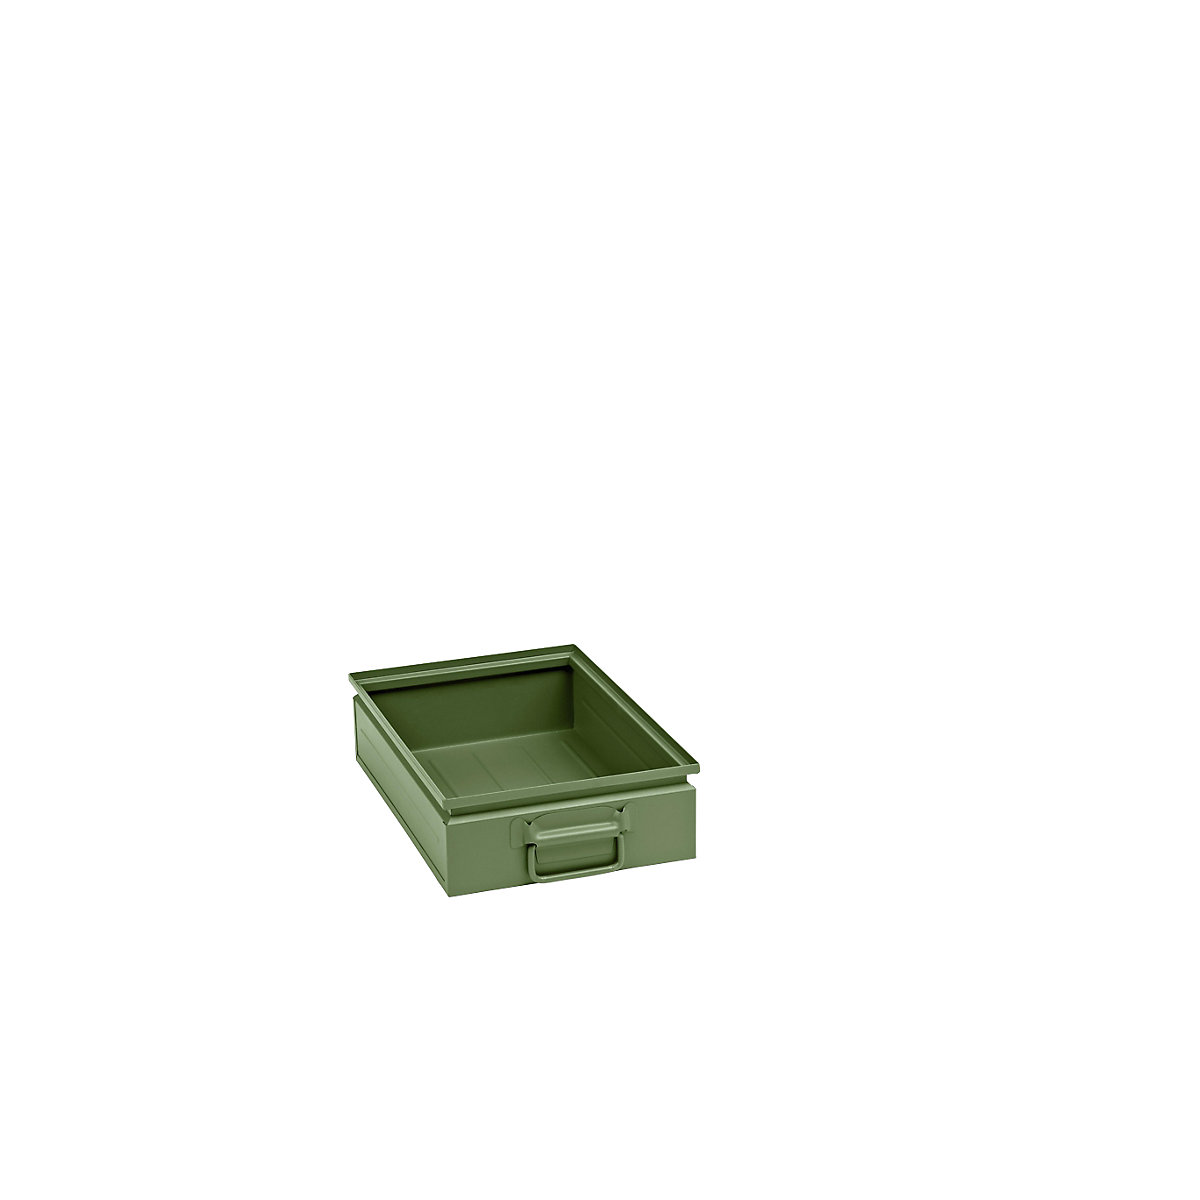 Kutija za slaganje od čeličnog lima, volumen otprilike 15 l, u rezeda zelenoj boji RAL 6011